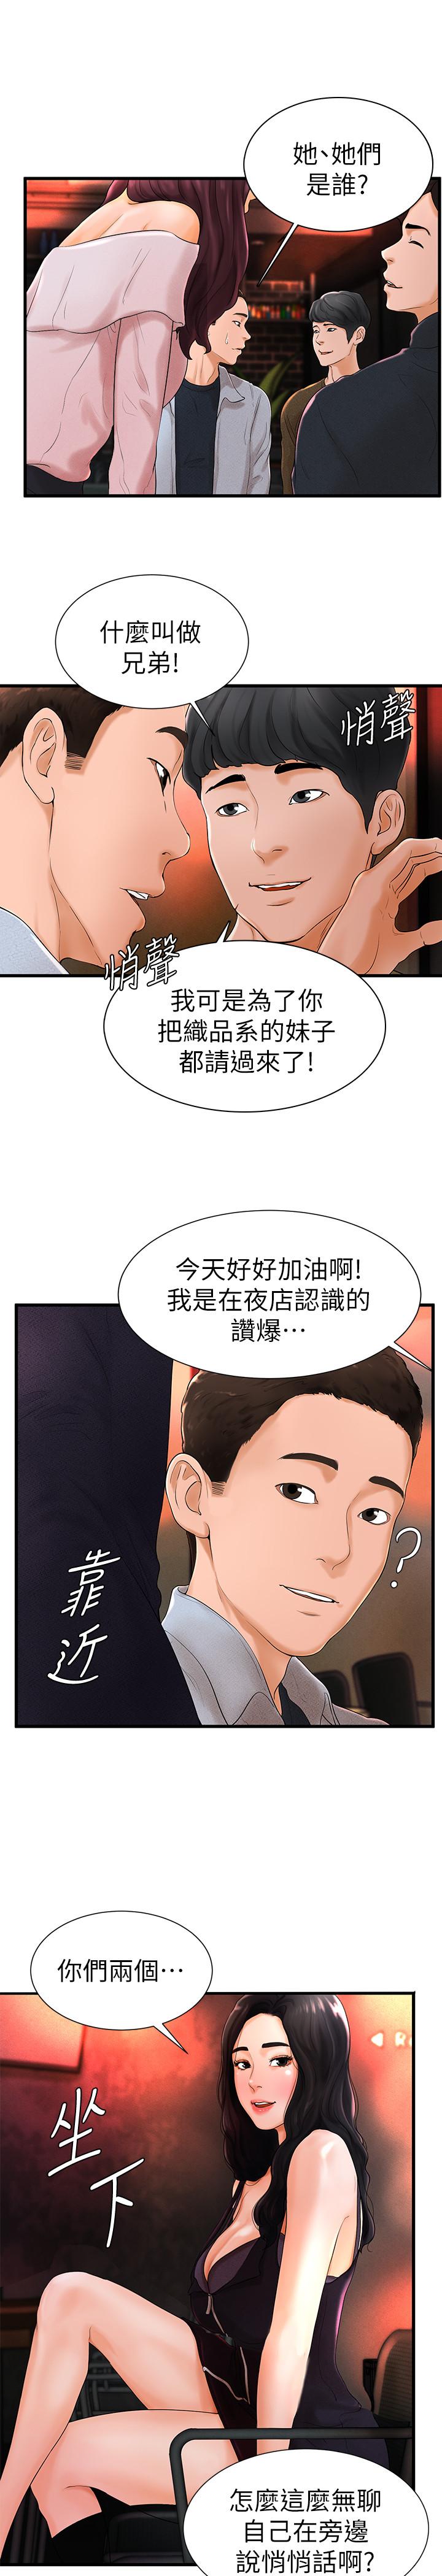 韩国污漫画 撞球甜心 第6话-从女孩变成女人 15